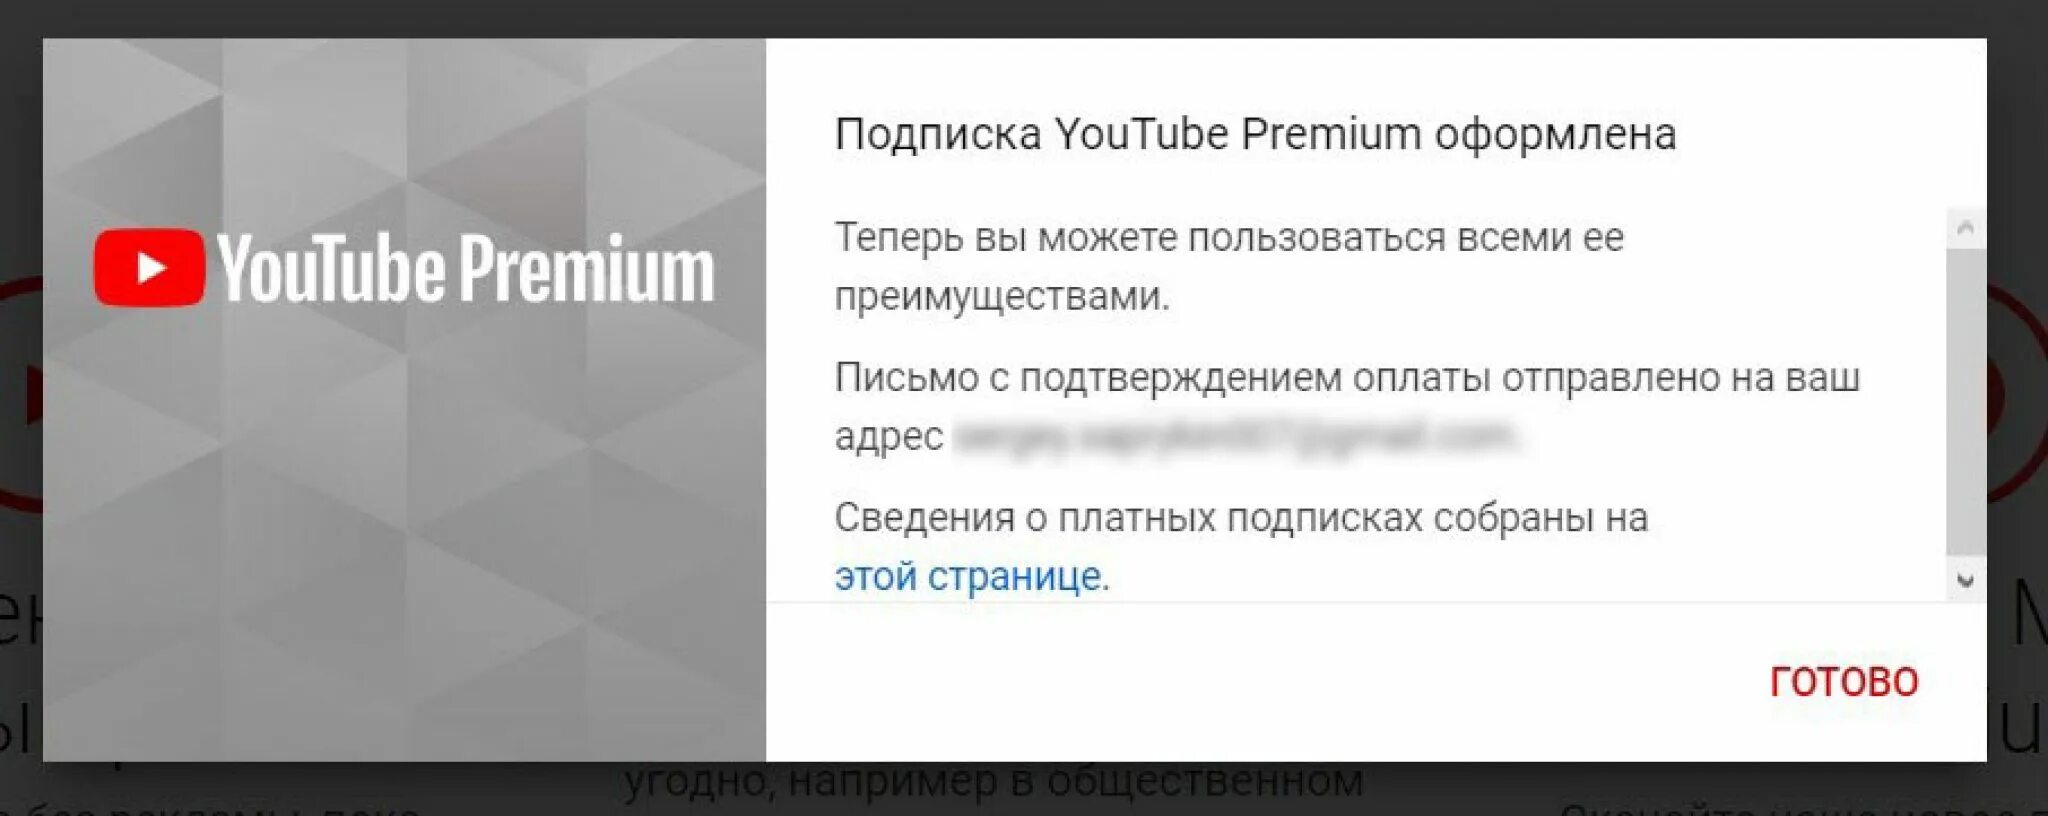 Подписка youtube Premium. Платная подписка на youtube. Платная подписка ютуб. Ютуб премиум оформлена. Как отключить подписку на ютубе